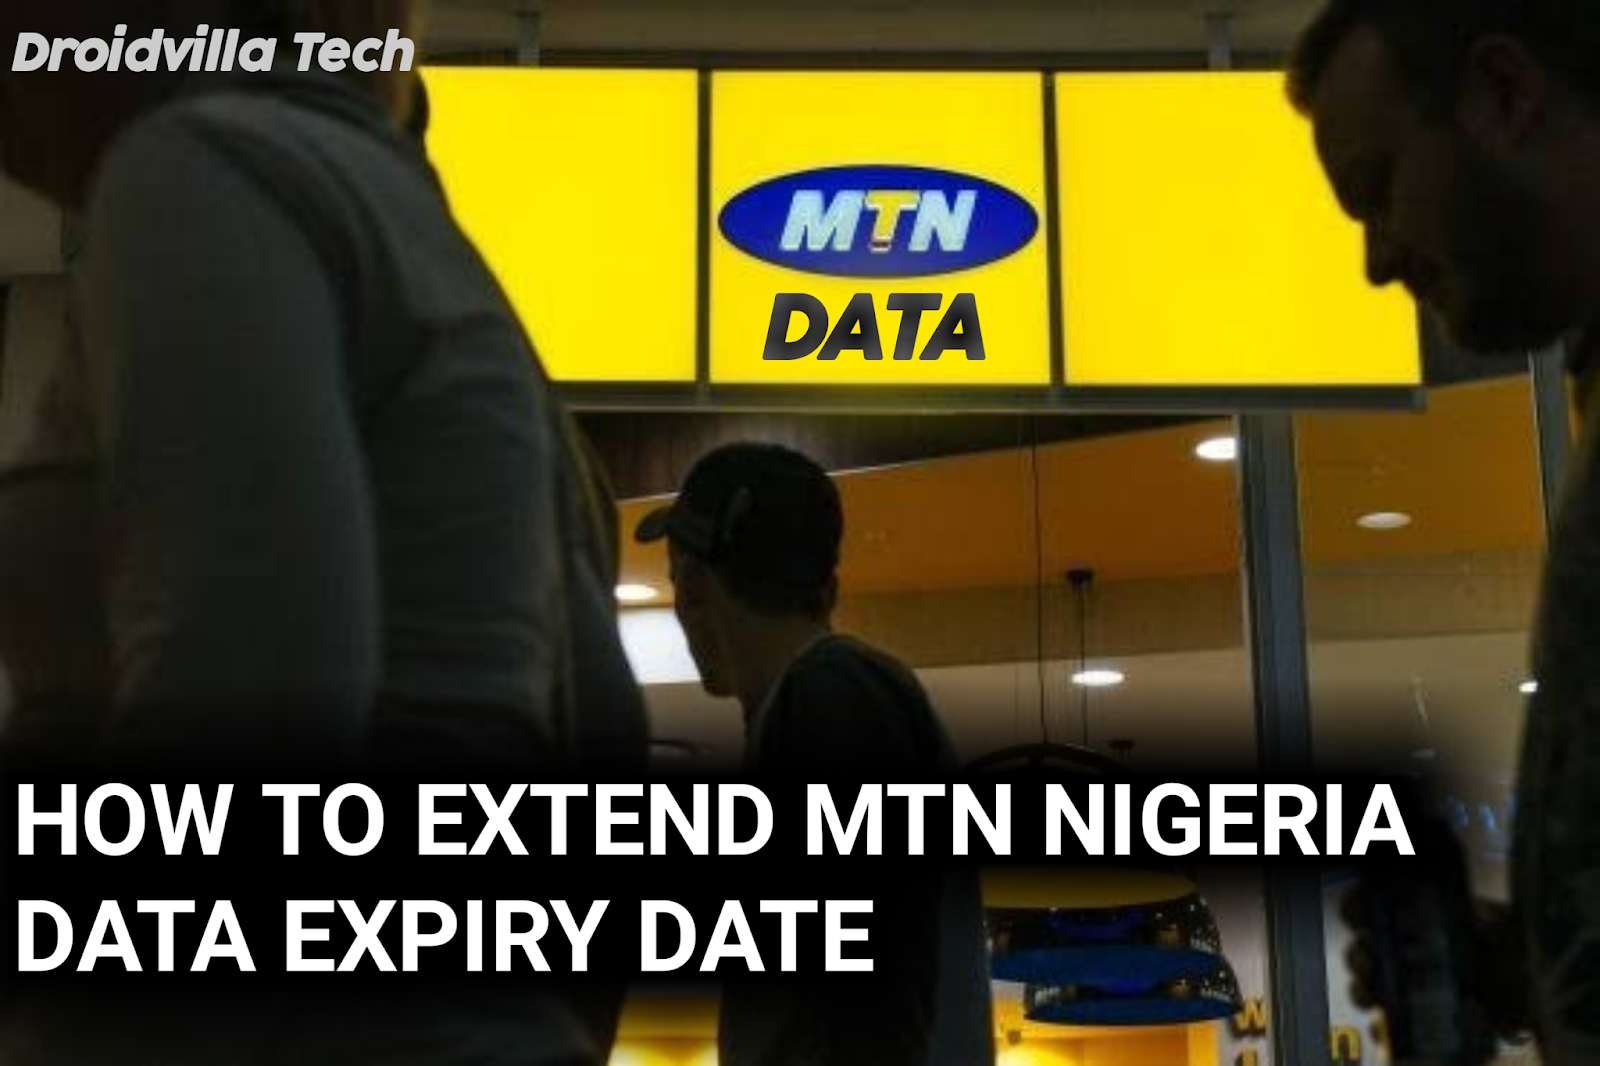 Extend MTN Data expiry date